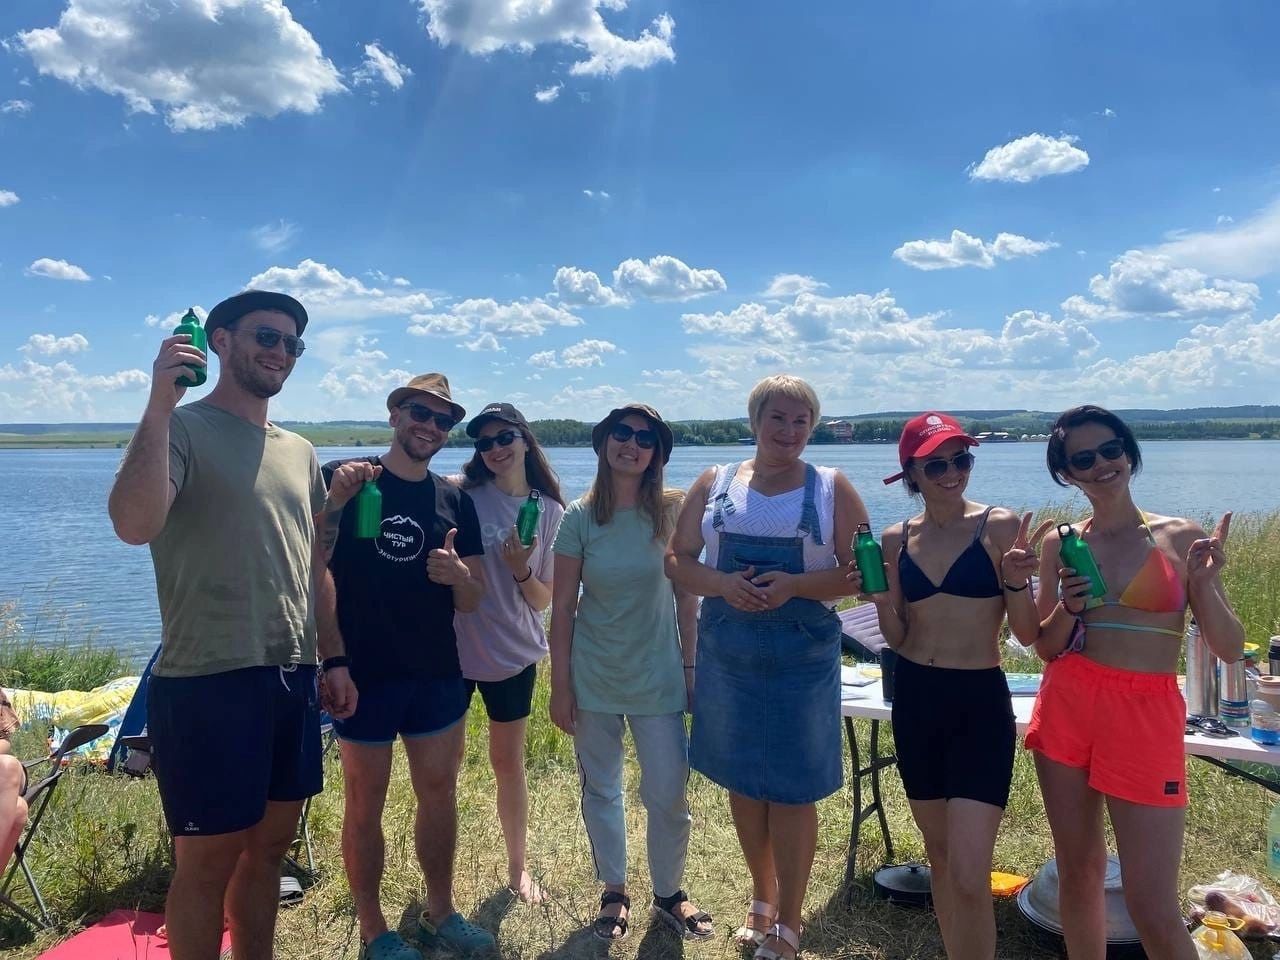 Активисты Бугульмы собрались на Карабашском водохранилище для участия в экоакции